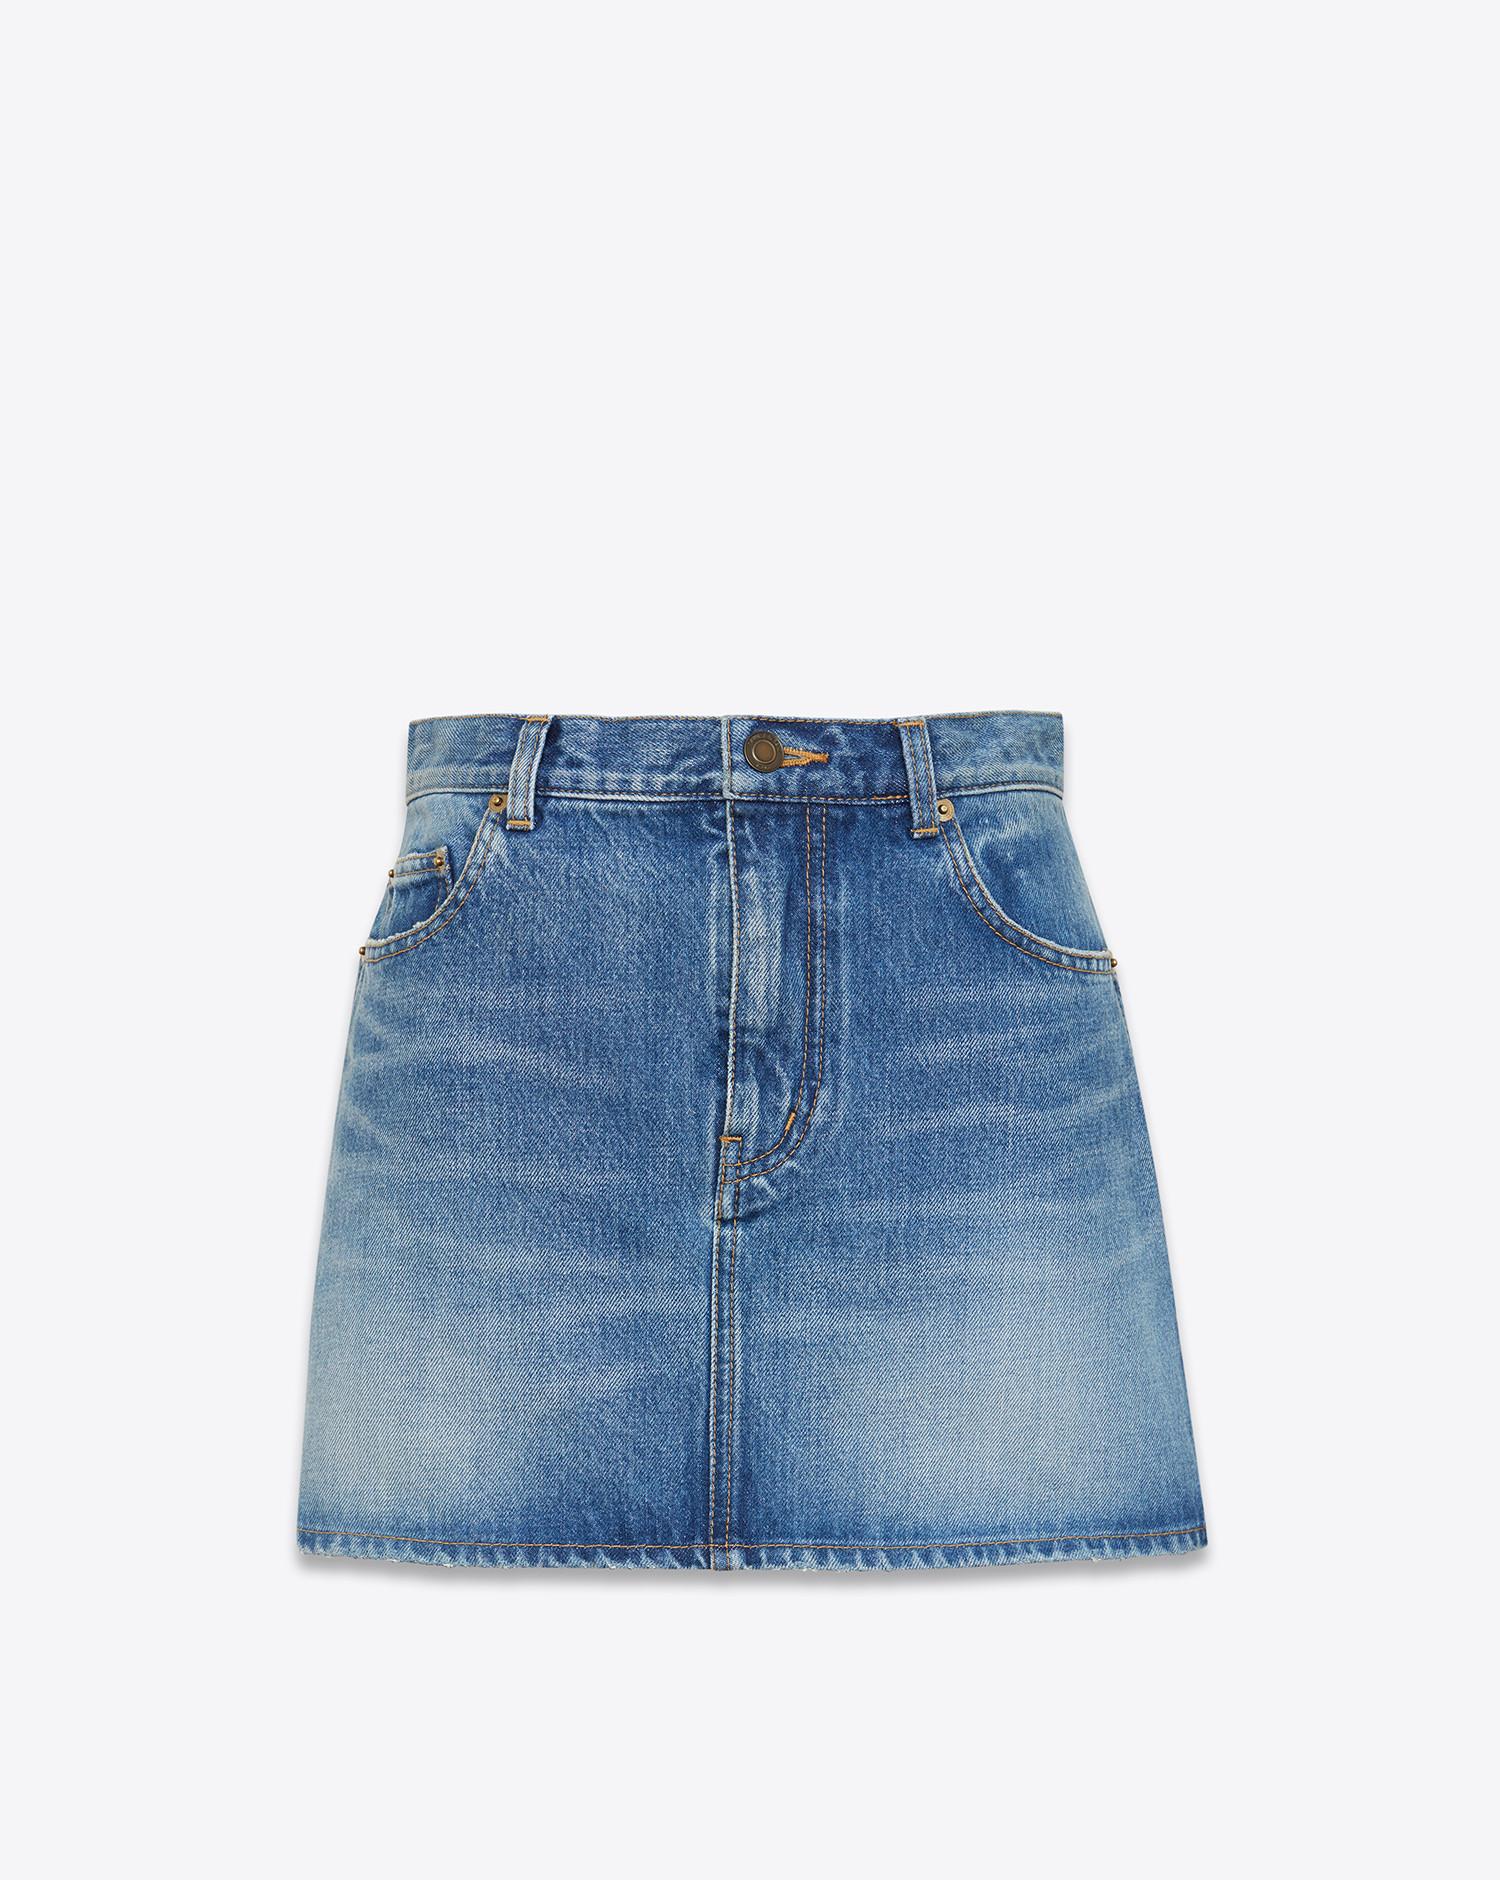 Saint Laurent Cotton Short Skirts in Blue - Lyst